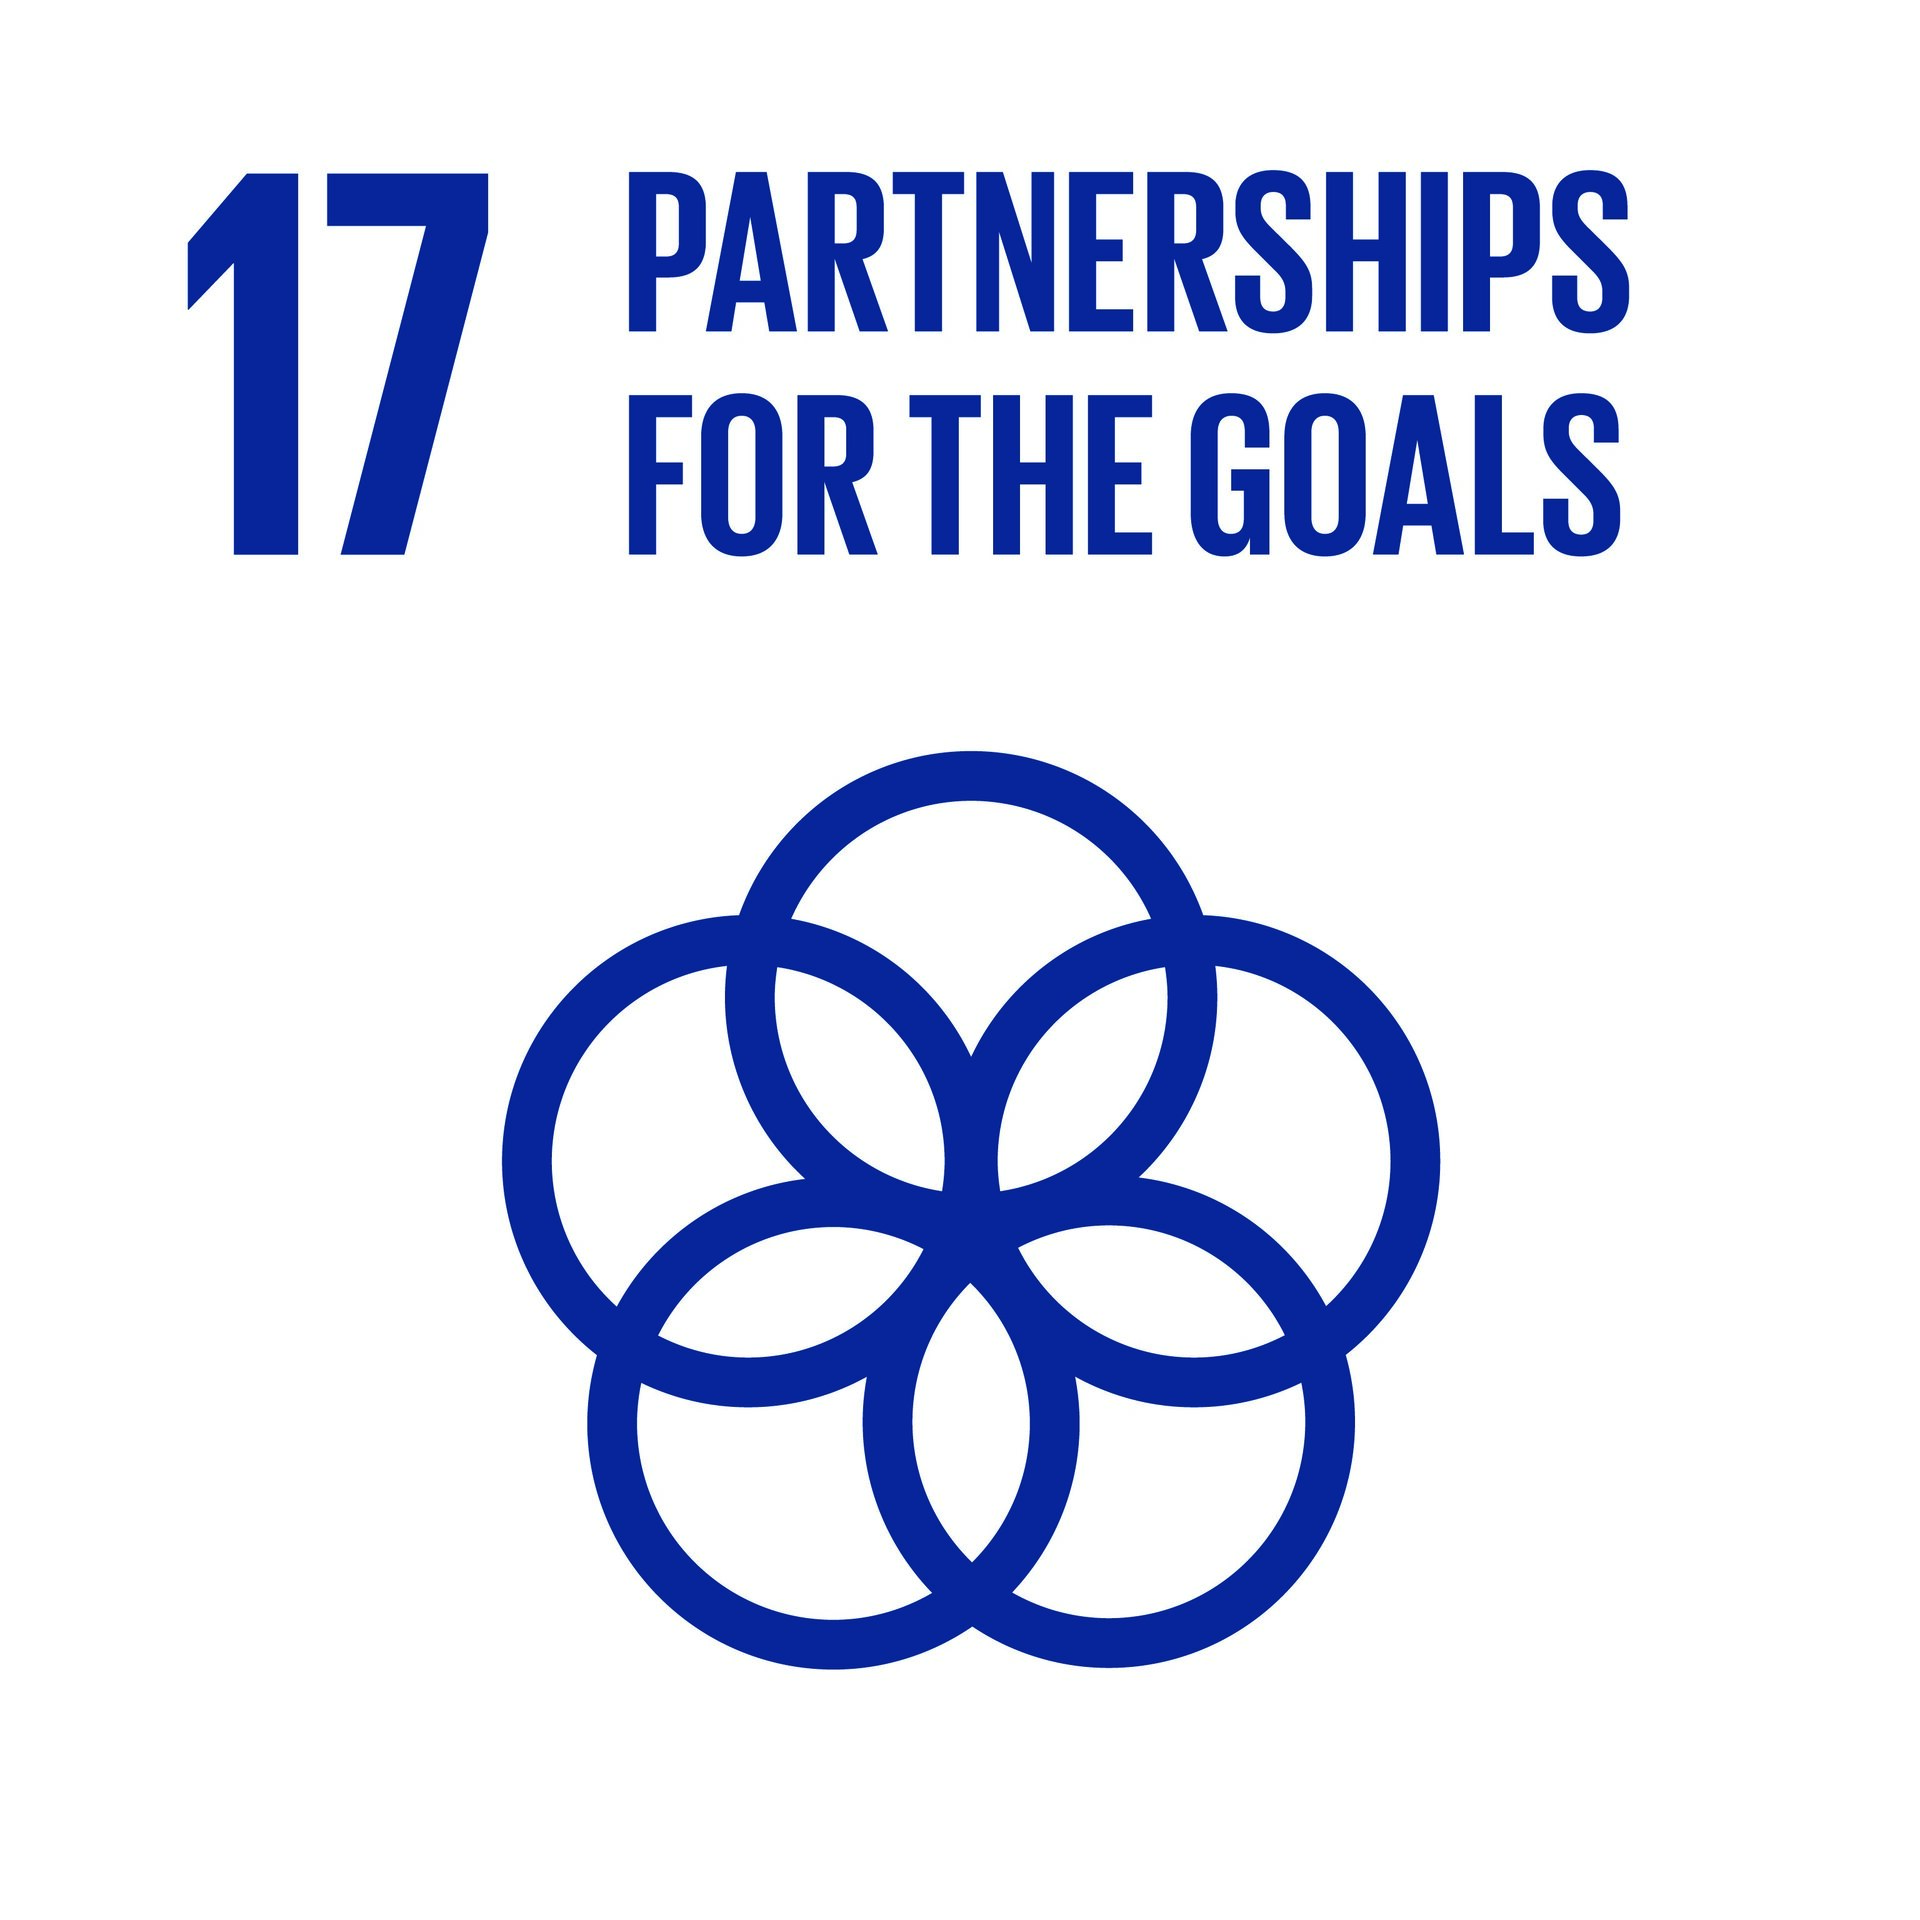 SDG17: Partnership for the Goals